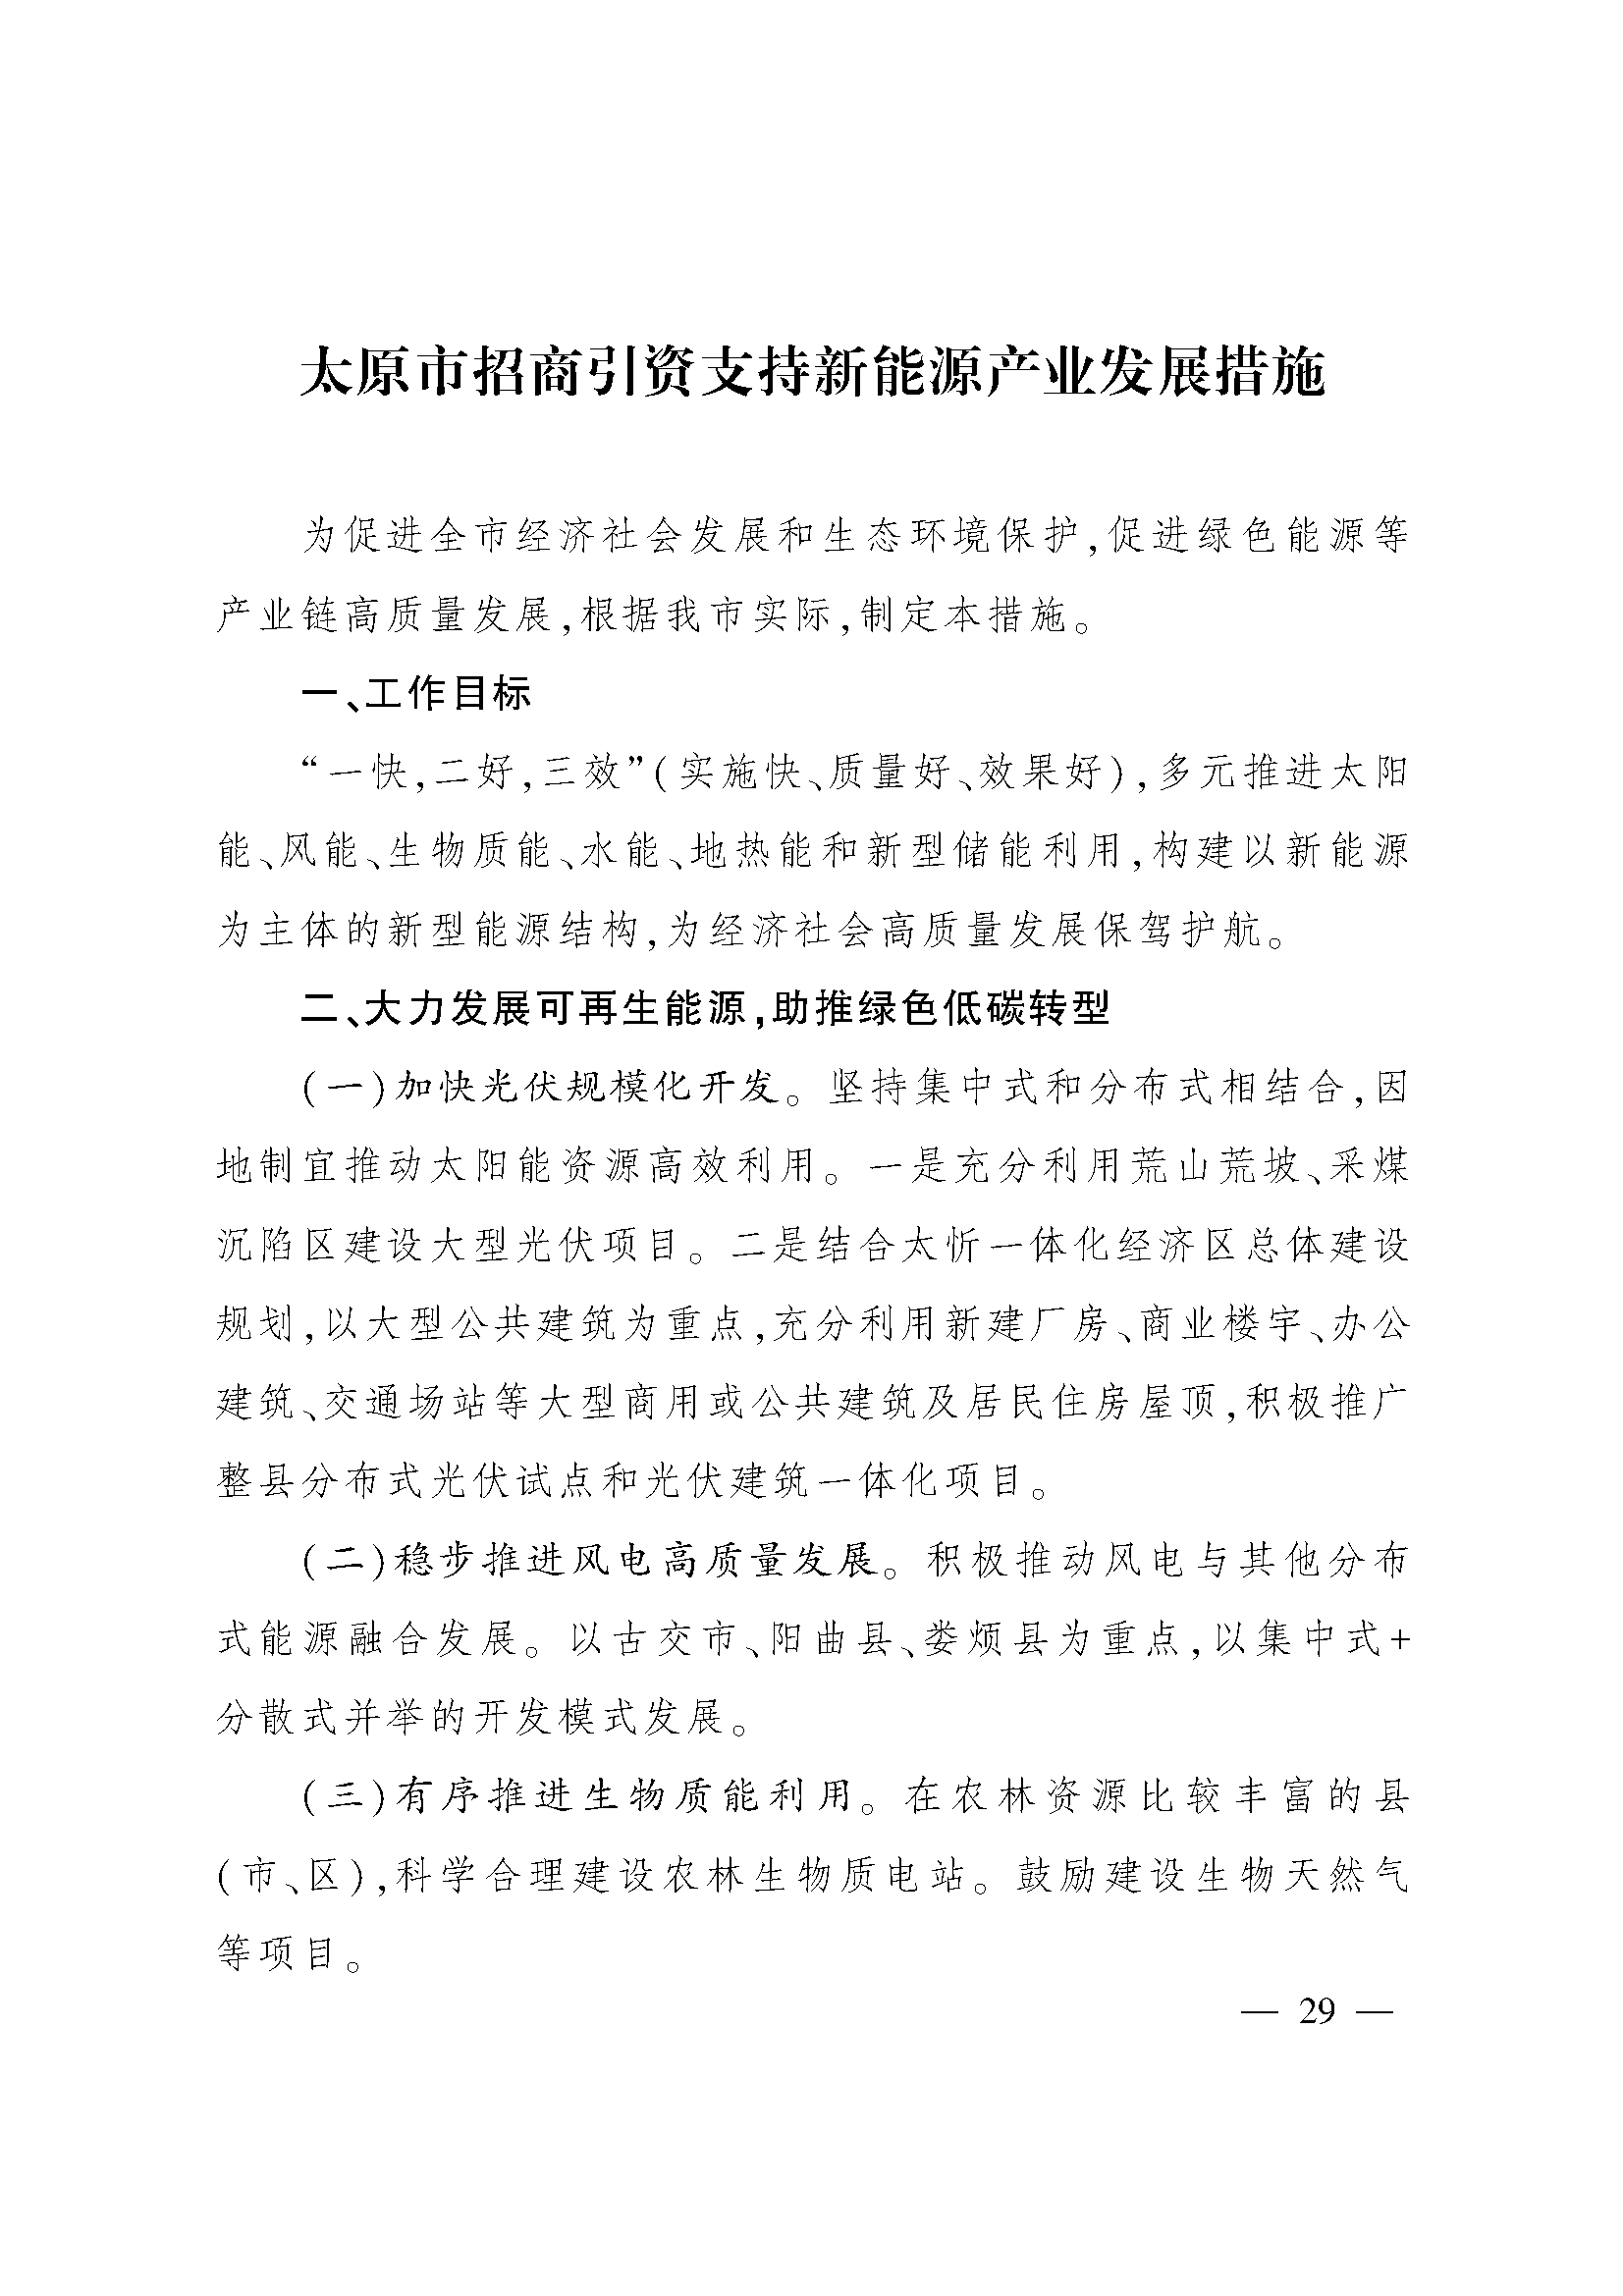 太原市人民政府办公室关于印发太原市招商引资若干措施的通知(图29)